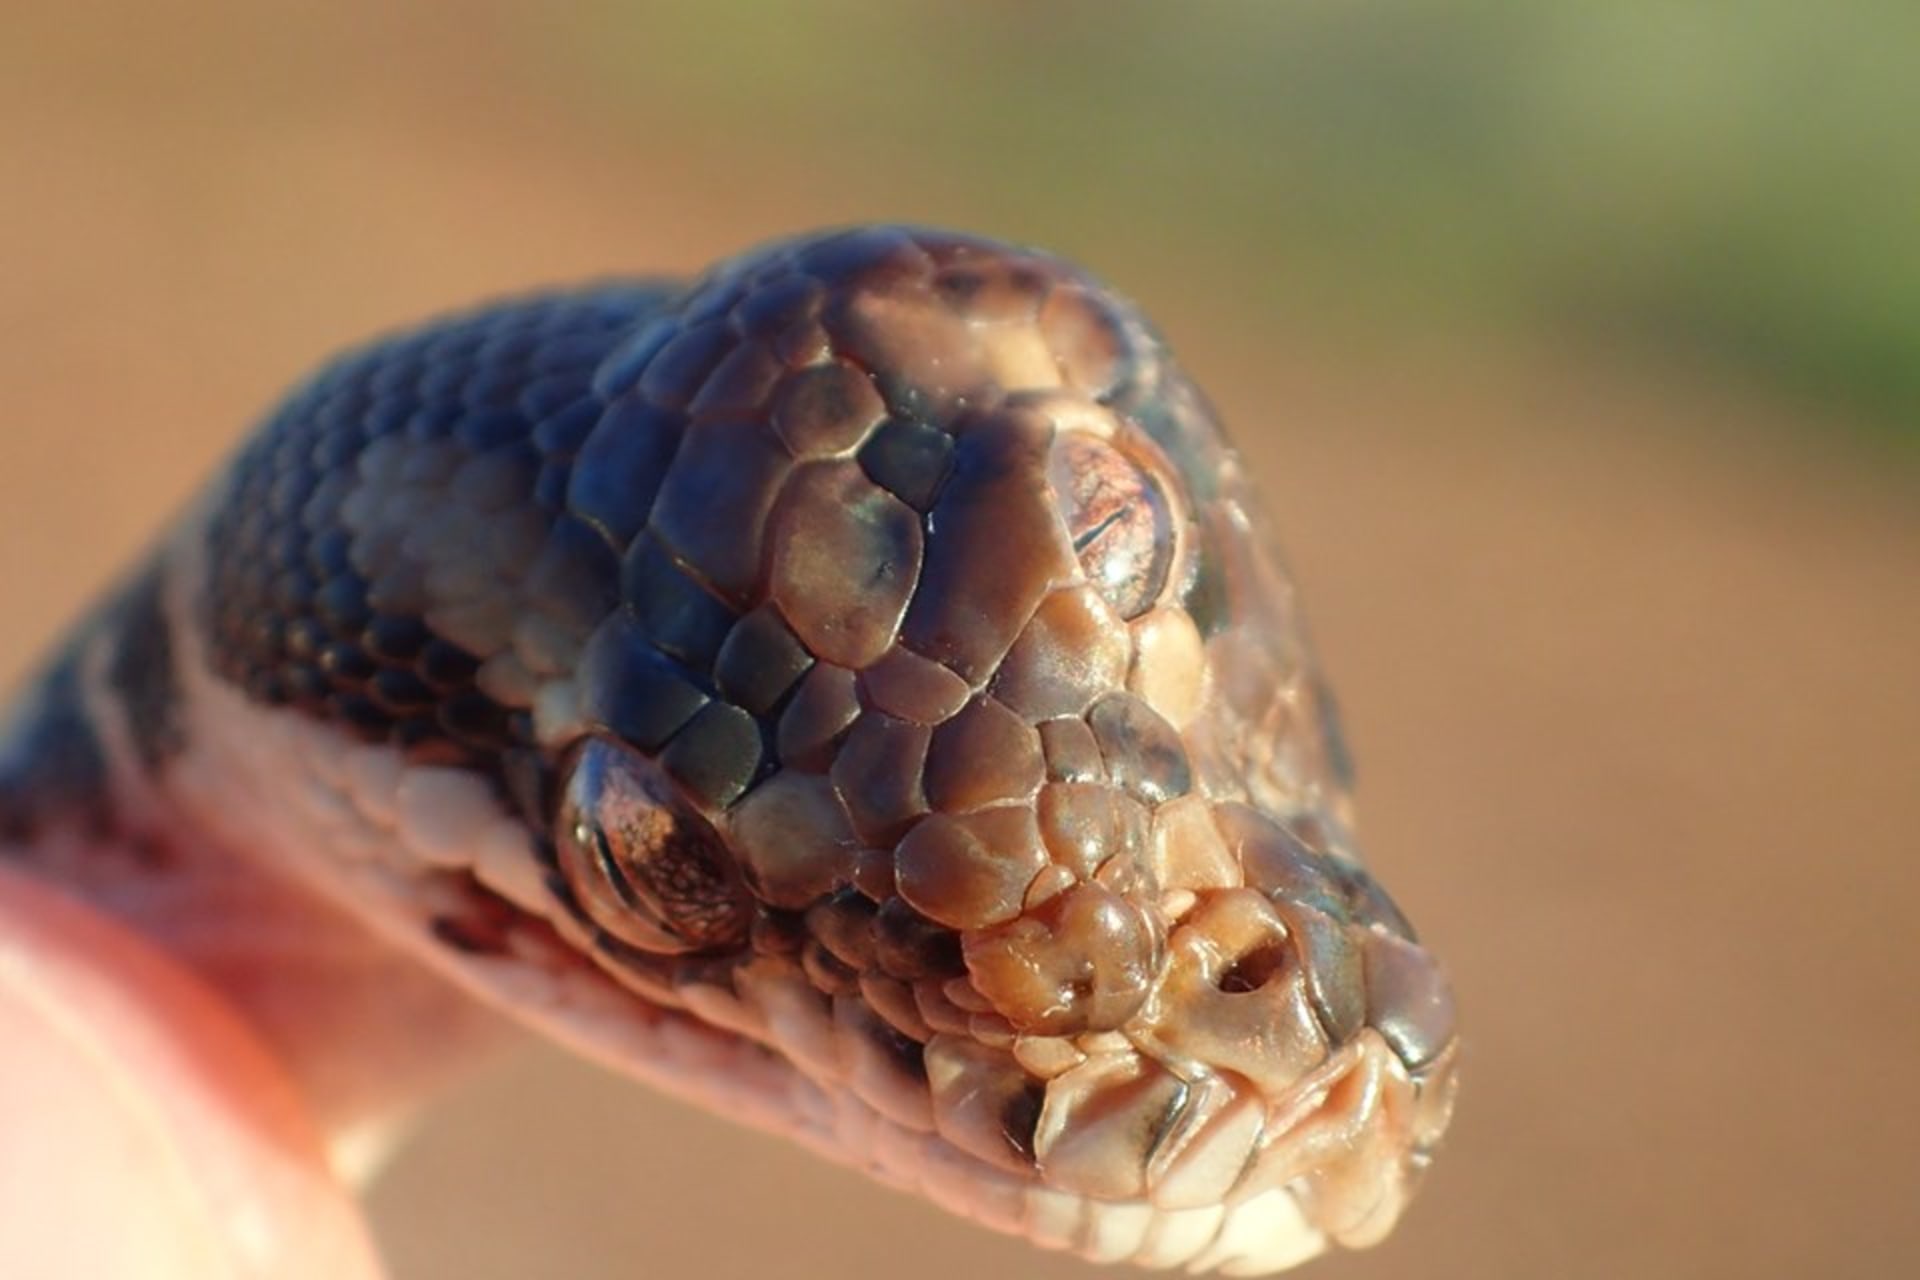 Správci parku našli hada, který měl tři oči 2